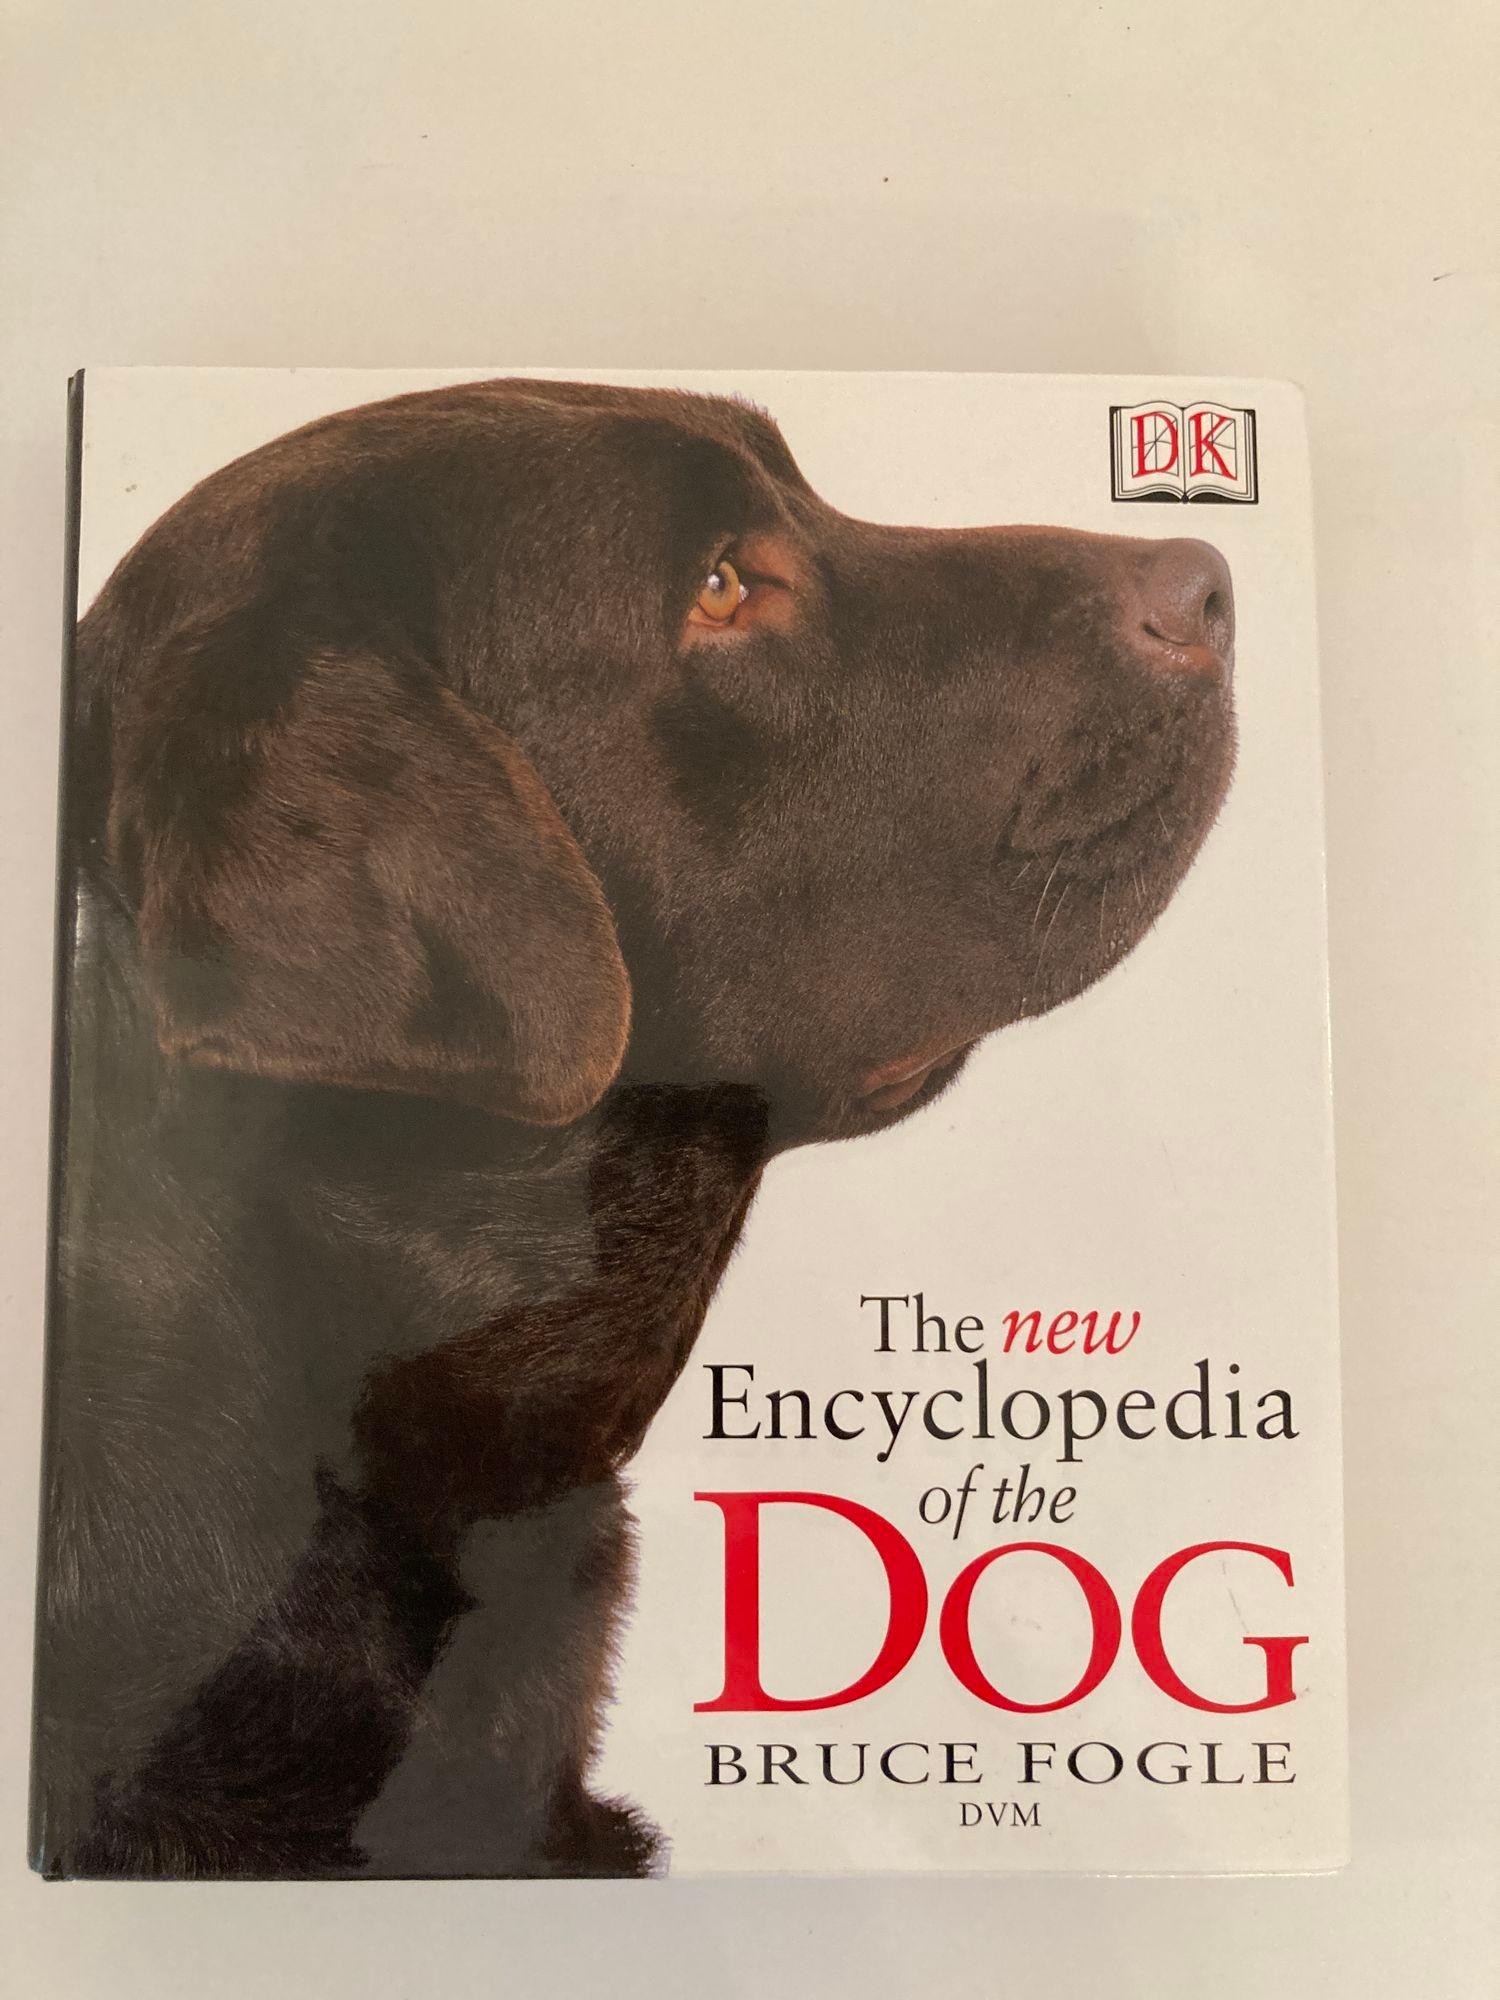 New Encyclopedia of Dog Bruce Fogle.
